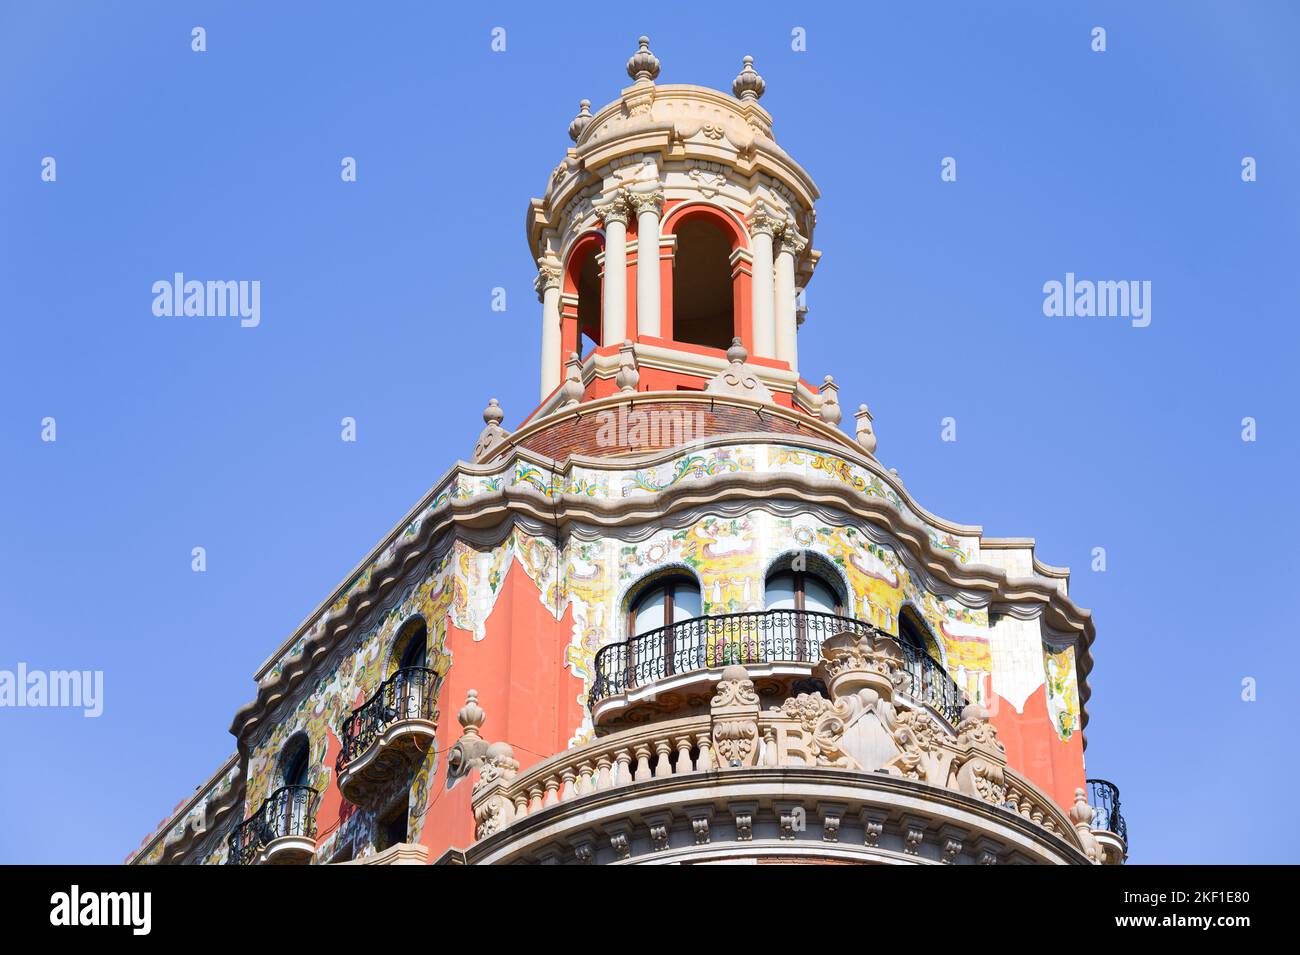 Valence, Espagne - 5 novembre 2022: Architecture extérieure du bâtiment colonial de la Banque de Valence. Le monument est une attraction touristique Banque D'Images